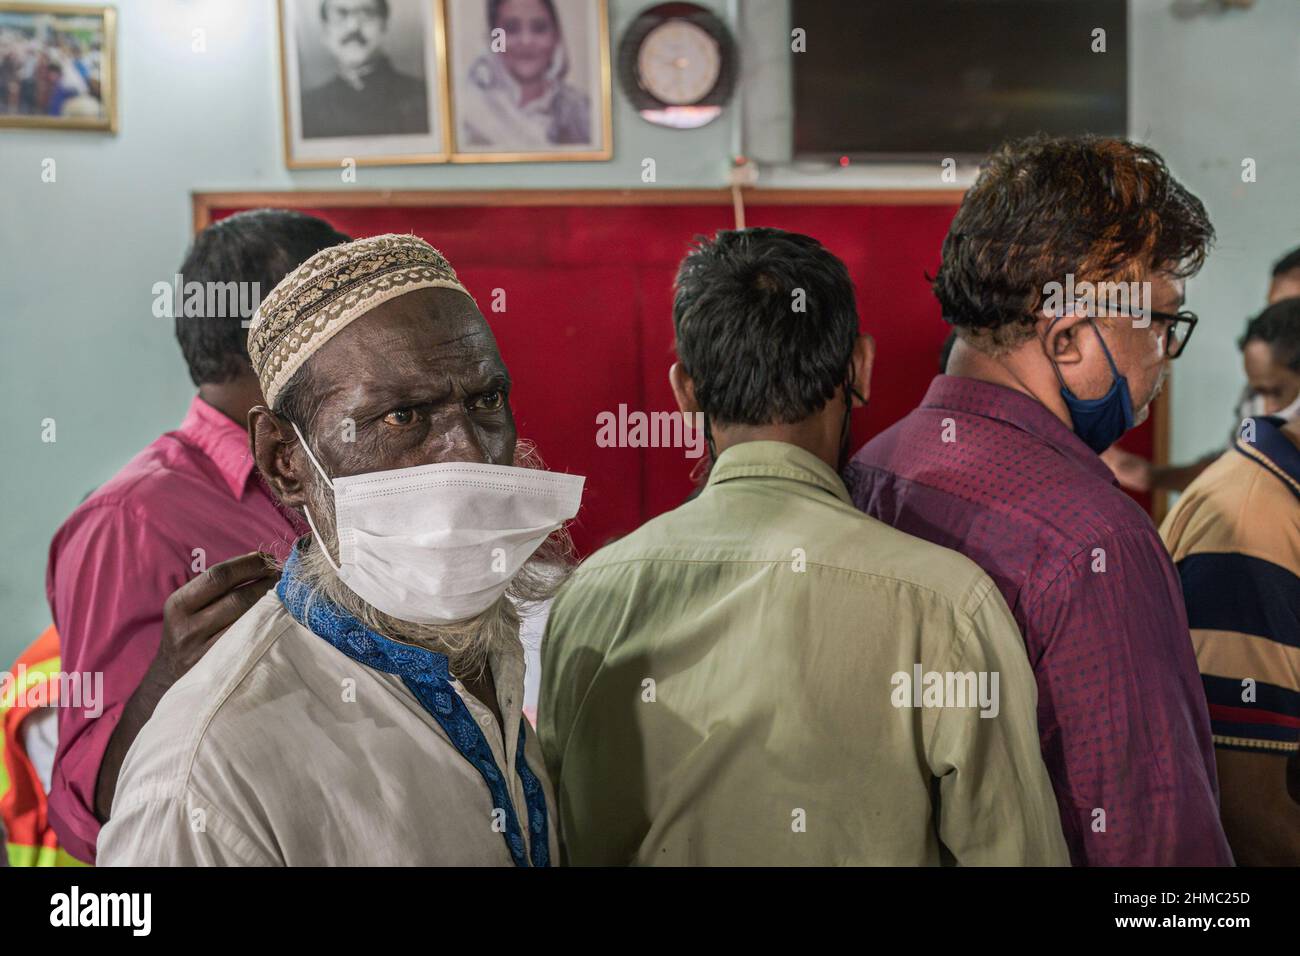 Un homme avec un masque de protection déchiré dans une file d'attente attendant de recevoir le vaccin de SARSCOV2 pendant la campagne de vaccination.a Dhaka, Bangladesh, la capitale du pays le plus densément peuplé du monde, la pandémie de COVID est une histoire chaotique depuis que les restrictions gouvernementales ont commencé à tenter de prévenir les infections et les décès. Dhaka est une mégapole croissante avec plus de 20 millions d'habitants au bruit et à la ruée quotidienne, mais sans les infrastructures nécessaires et avec plus de 60% de sa population travaillant de manière informelle et embourbée dans la pauvreté, le chaos s'est intensifié à tous les niveaux. Banque D'Images